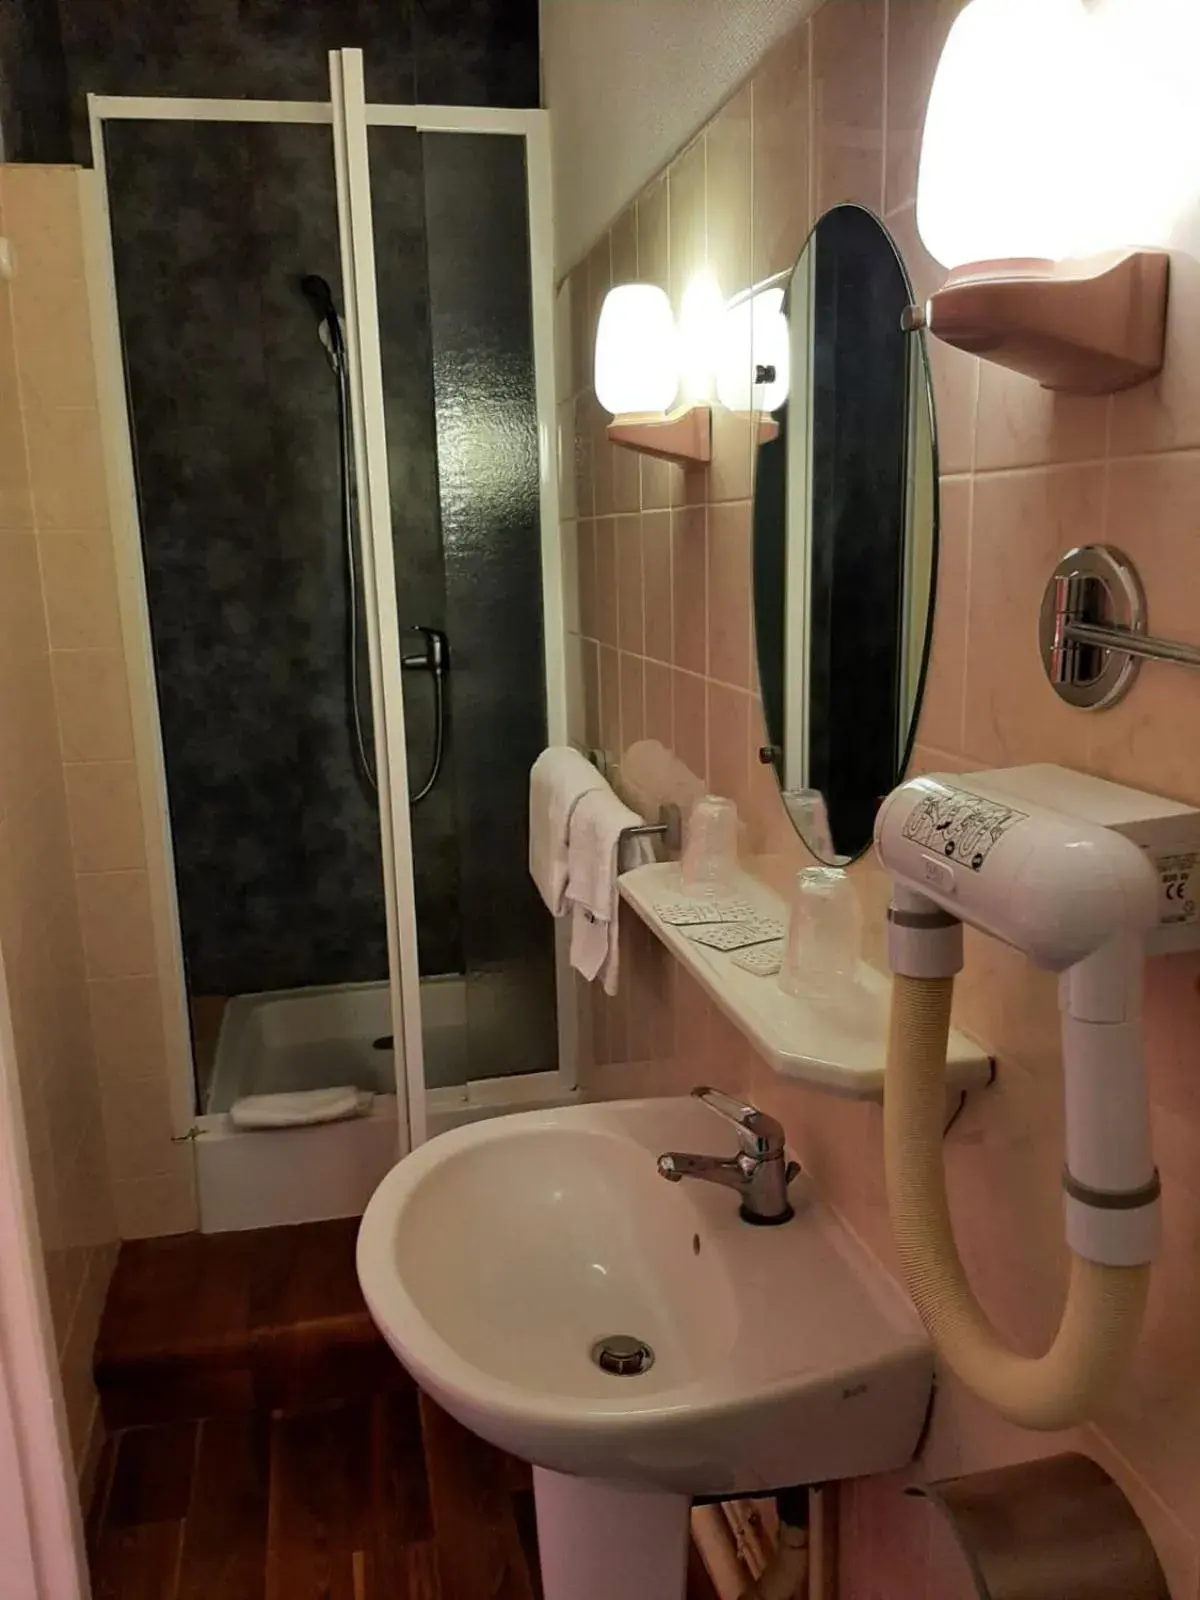 Bathroom in Hotel du Cygne